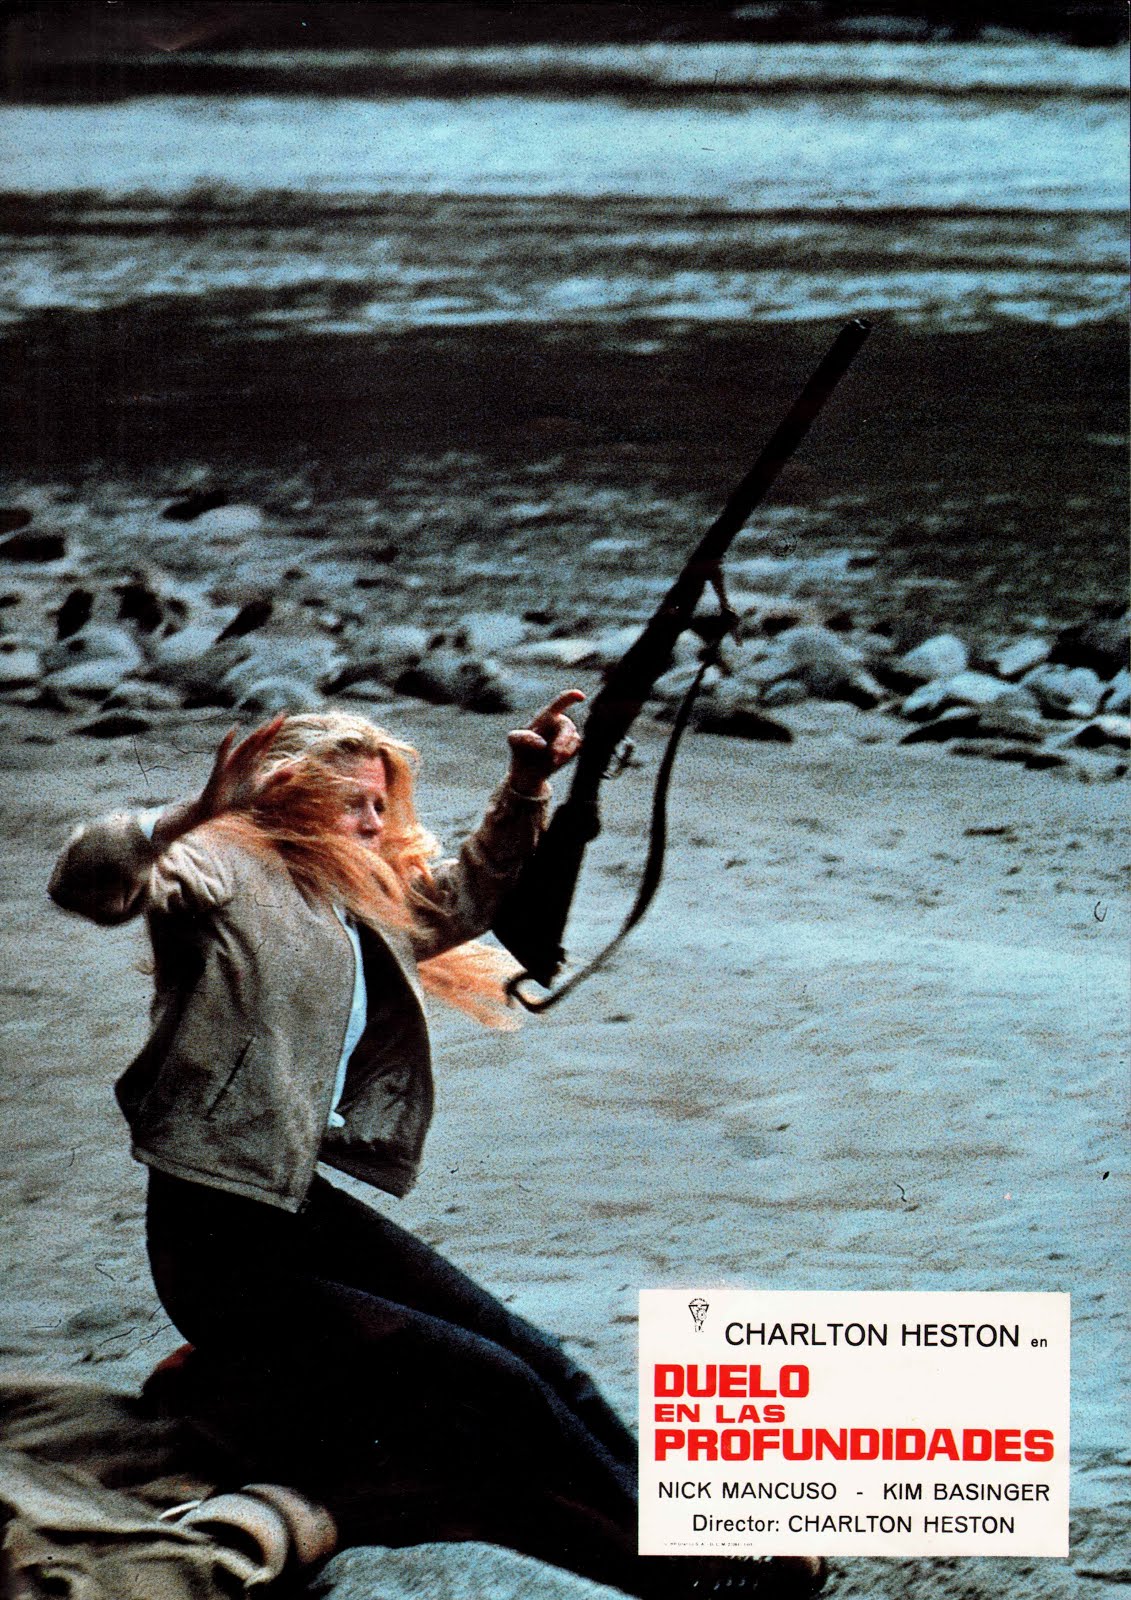 La fièvre de l'or (1981) Charlton Heston / Fraser C. Heston - Mother lode (28.09.1981 / 11.1981)